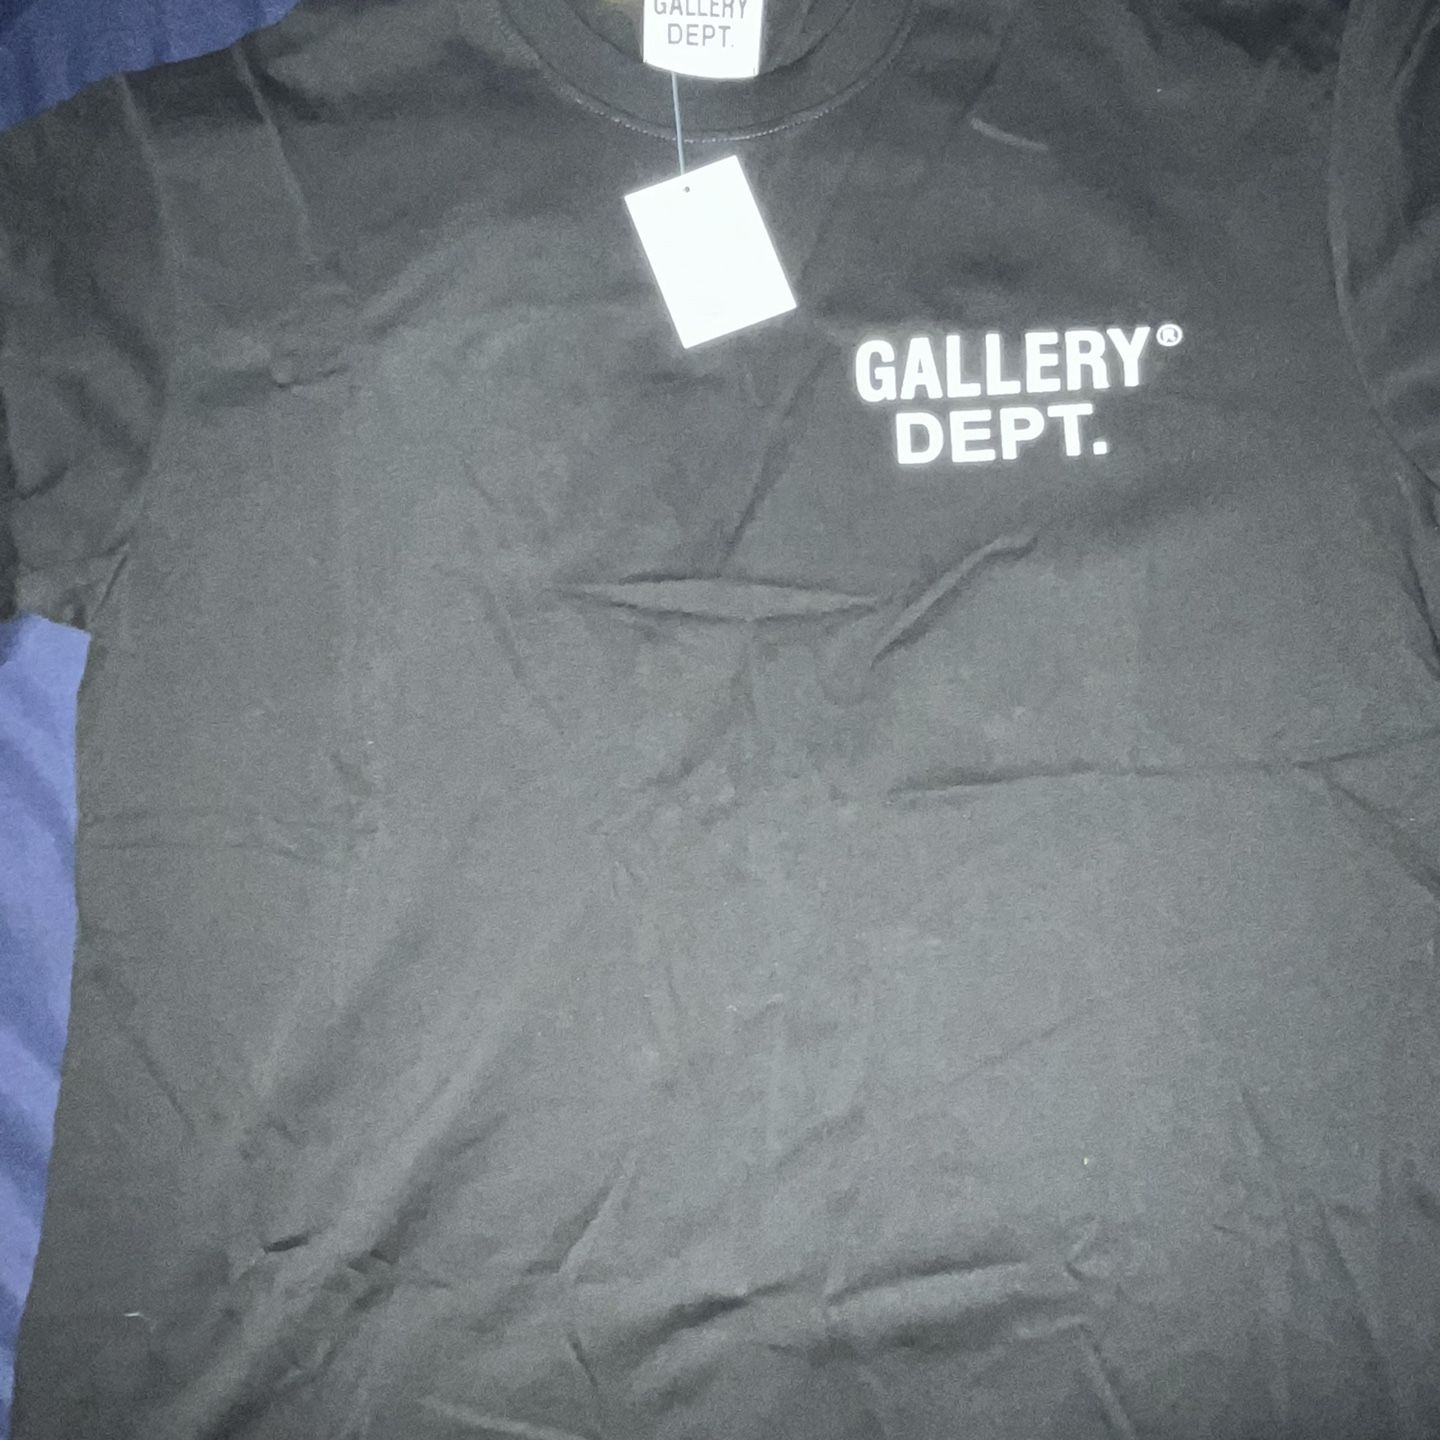 Gallery Dept. T-Shirt